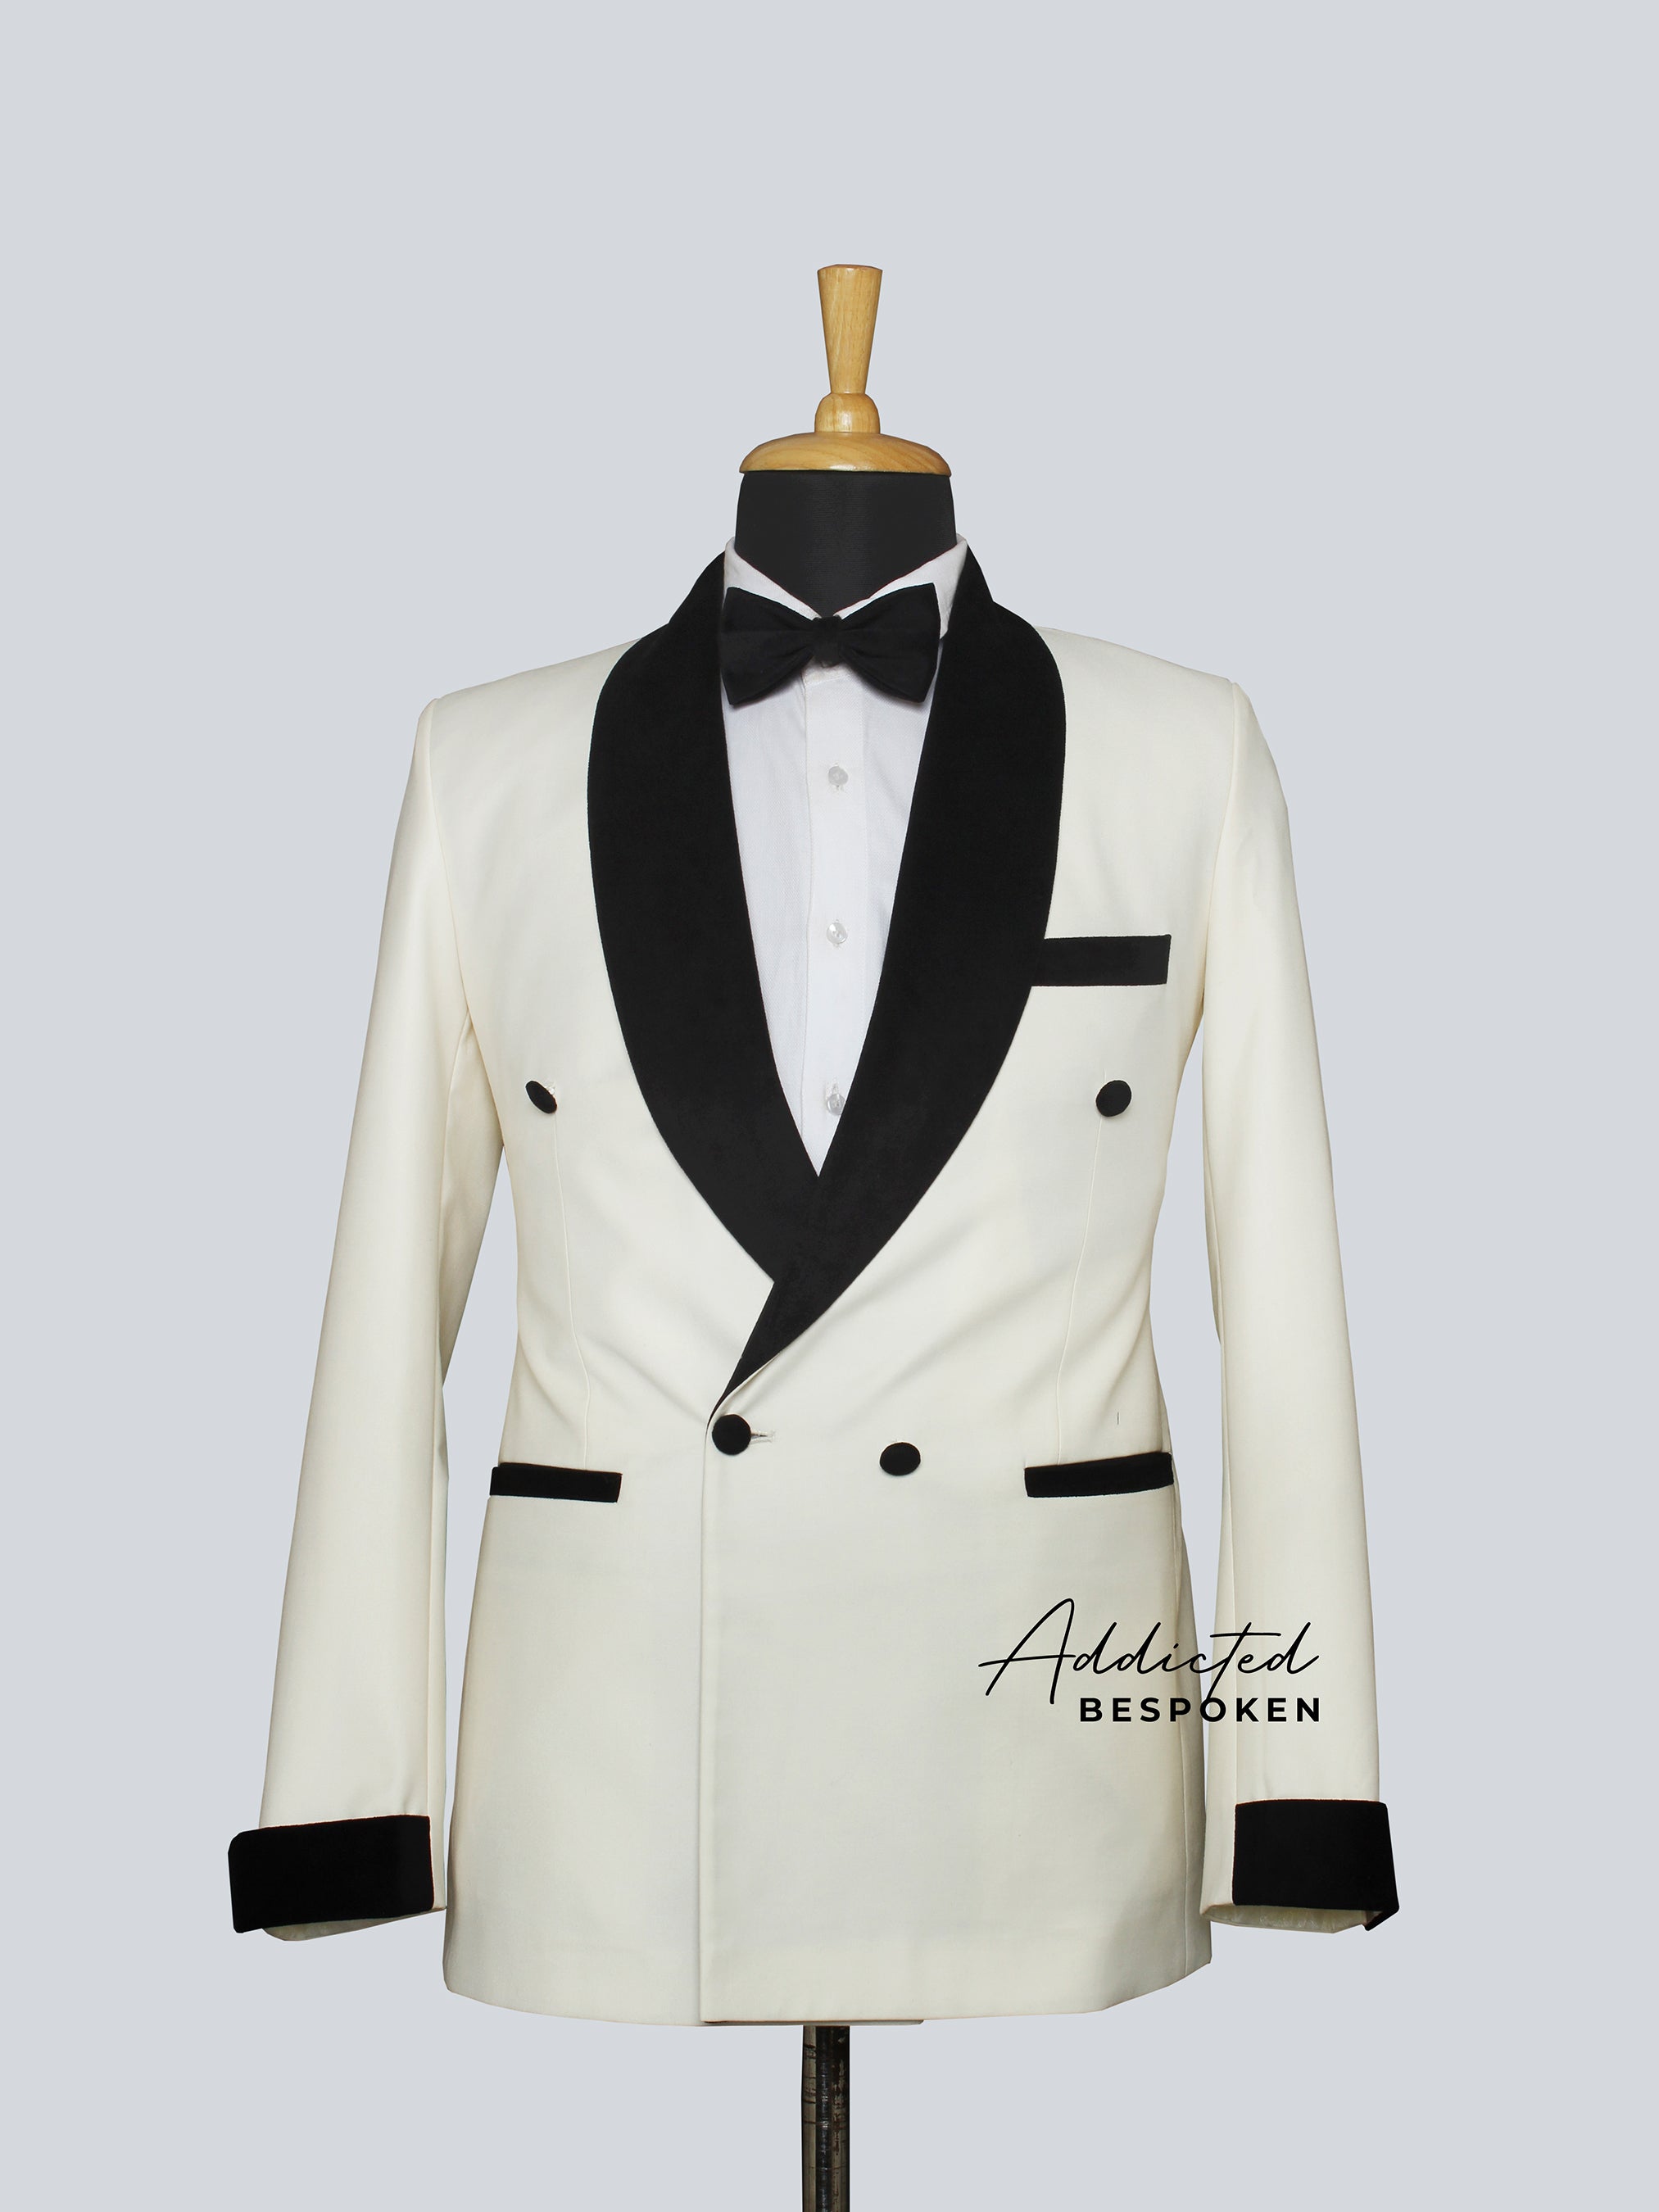 The Gentleman Tuxedo Suit